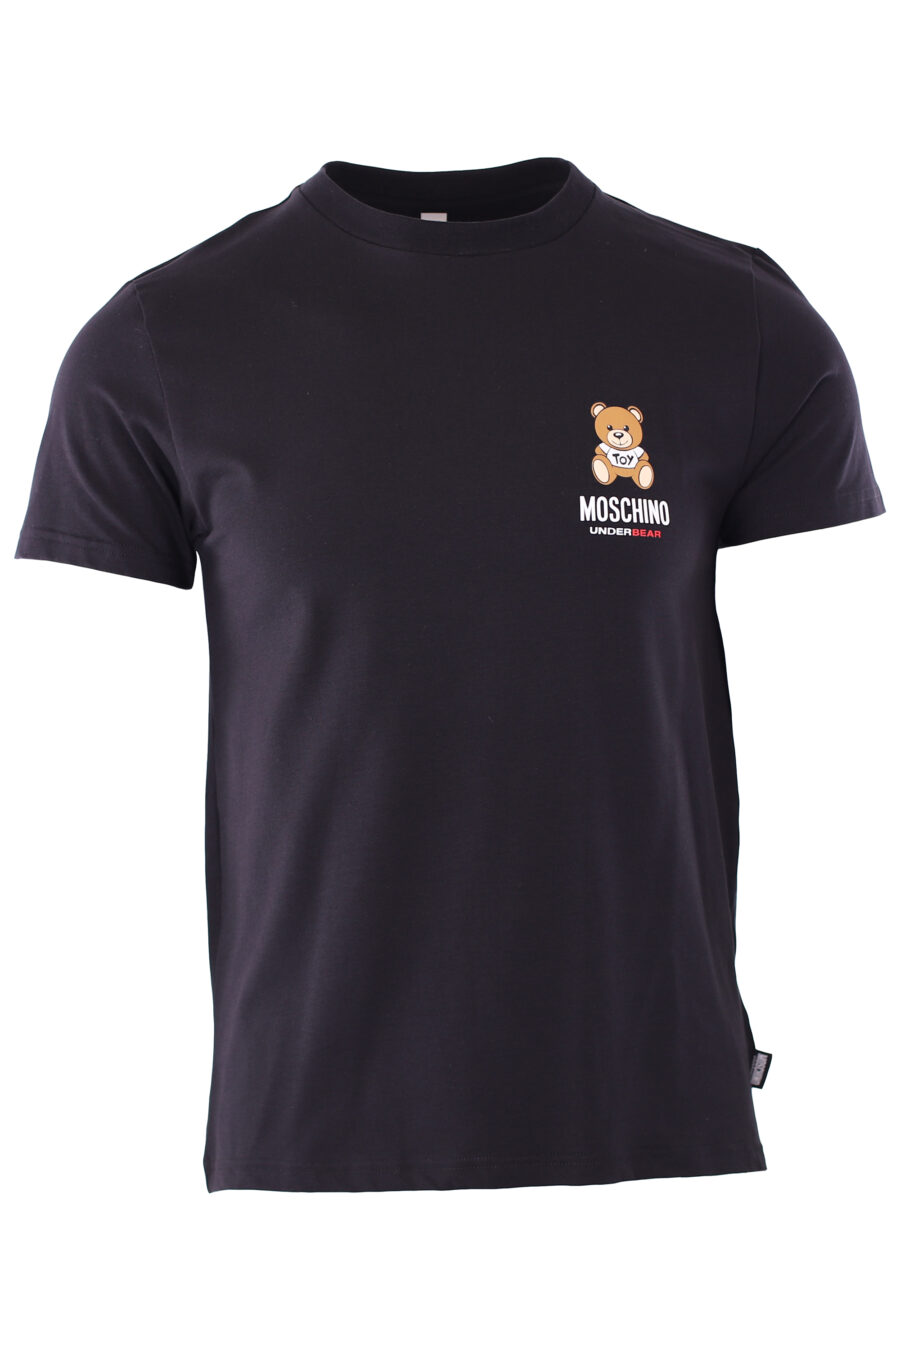 T-shirt preta "slim fit" com minilogue de urso "underbear" - IMG 6591